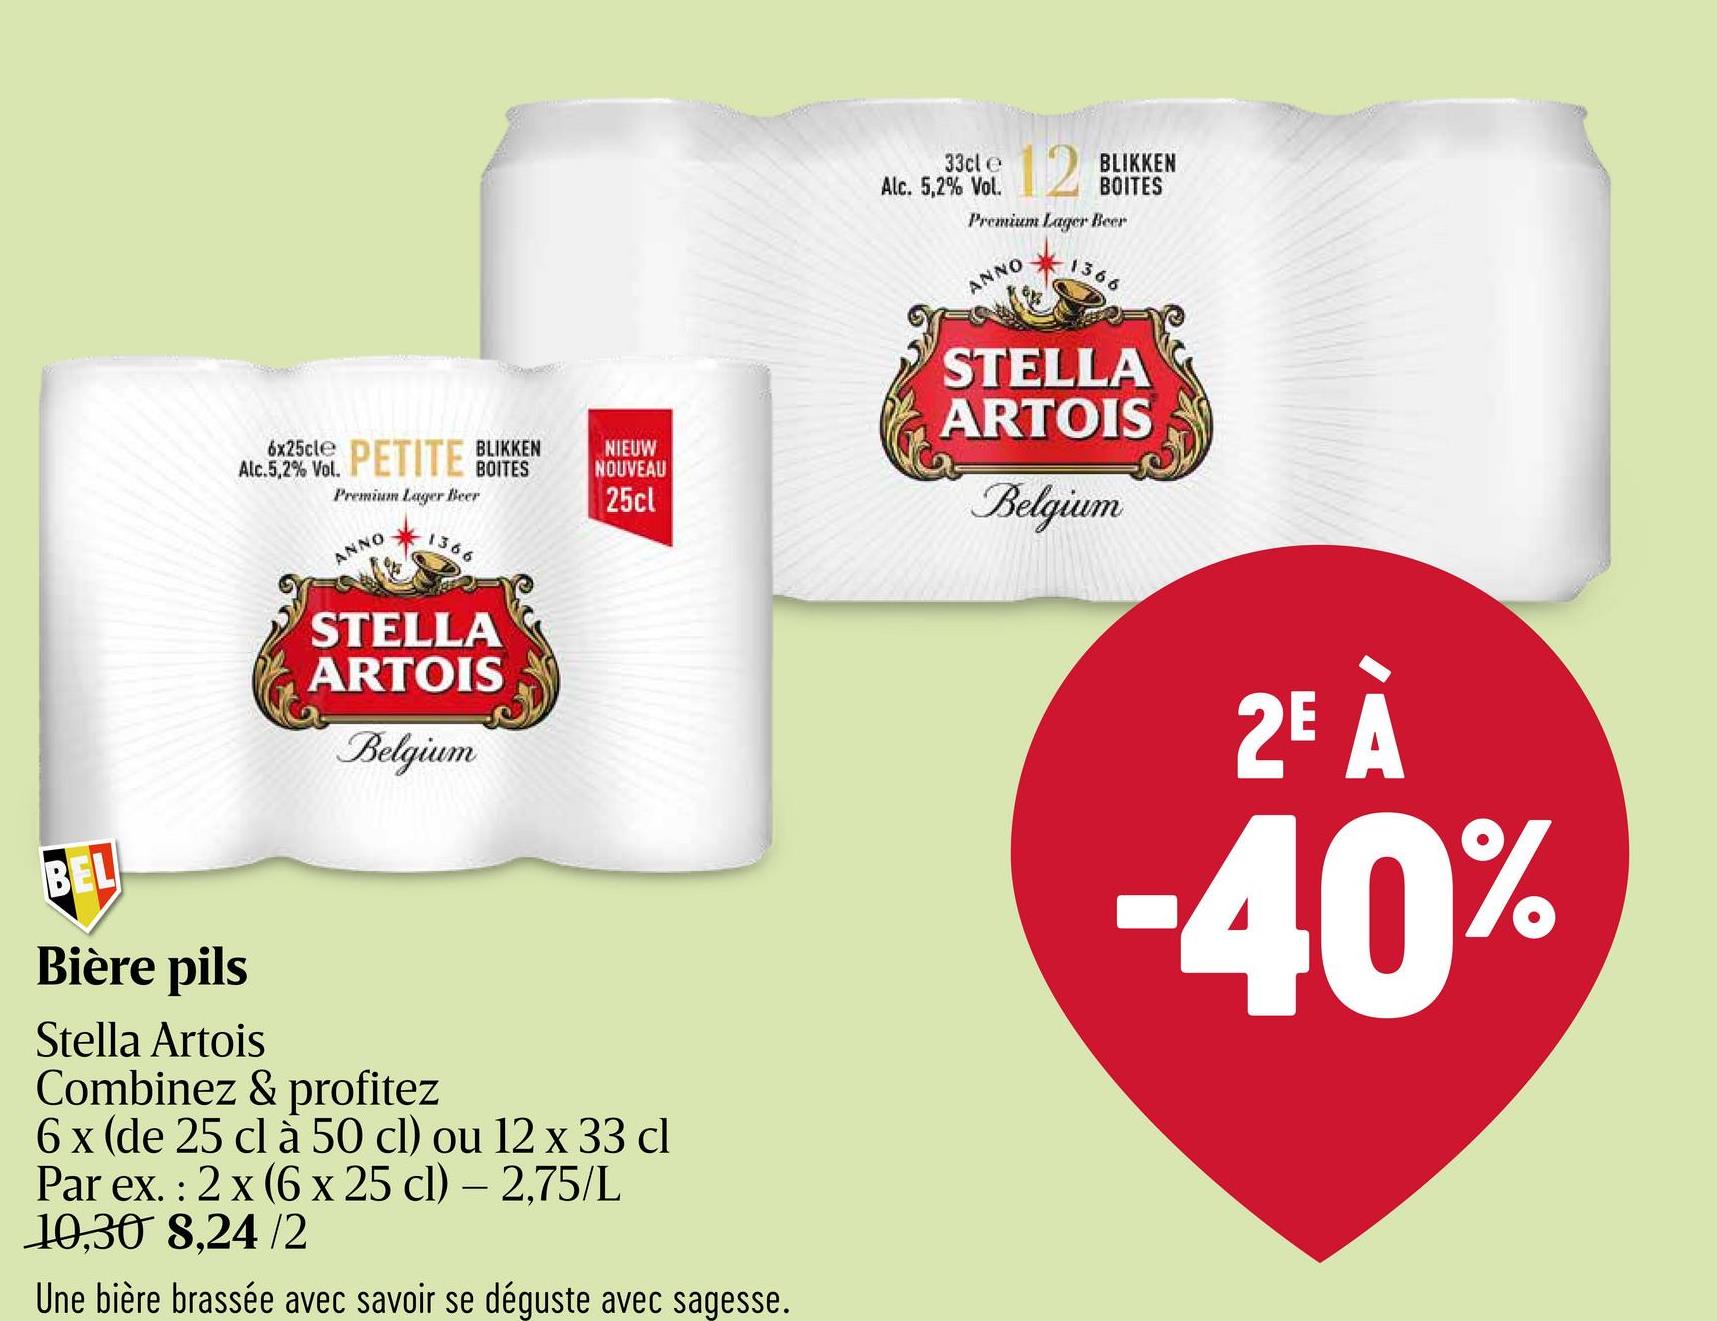 Bière blonde | Pils | 5,2% ALC. | Canette Stella Artois Pils Bière Canette 6x33cl